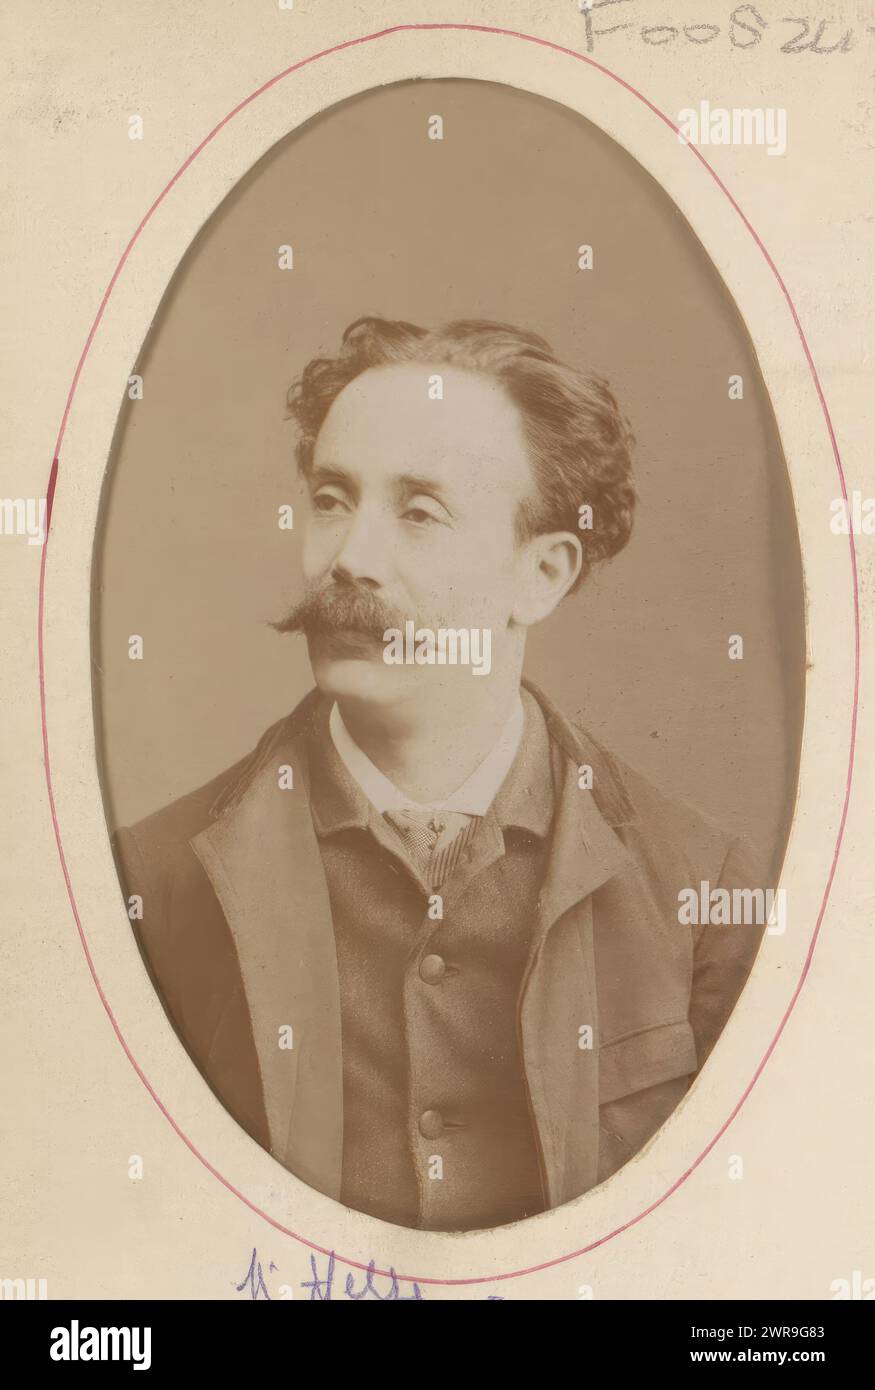 Ritratto di un uomo, chiamato Mr. Hesse, questa foto fa parte di un album., Louis Martin, Nantes, 1886 - 1900, cartone, stampa albume, altezza 104 mm x larghezza 63 mm, fotografia Foto Stock